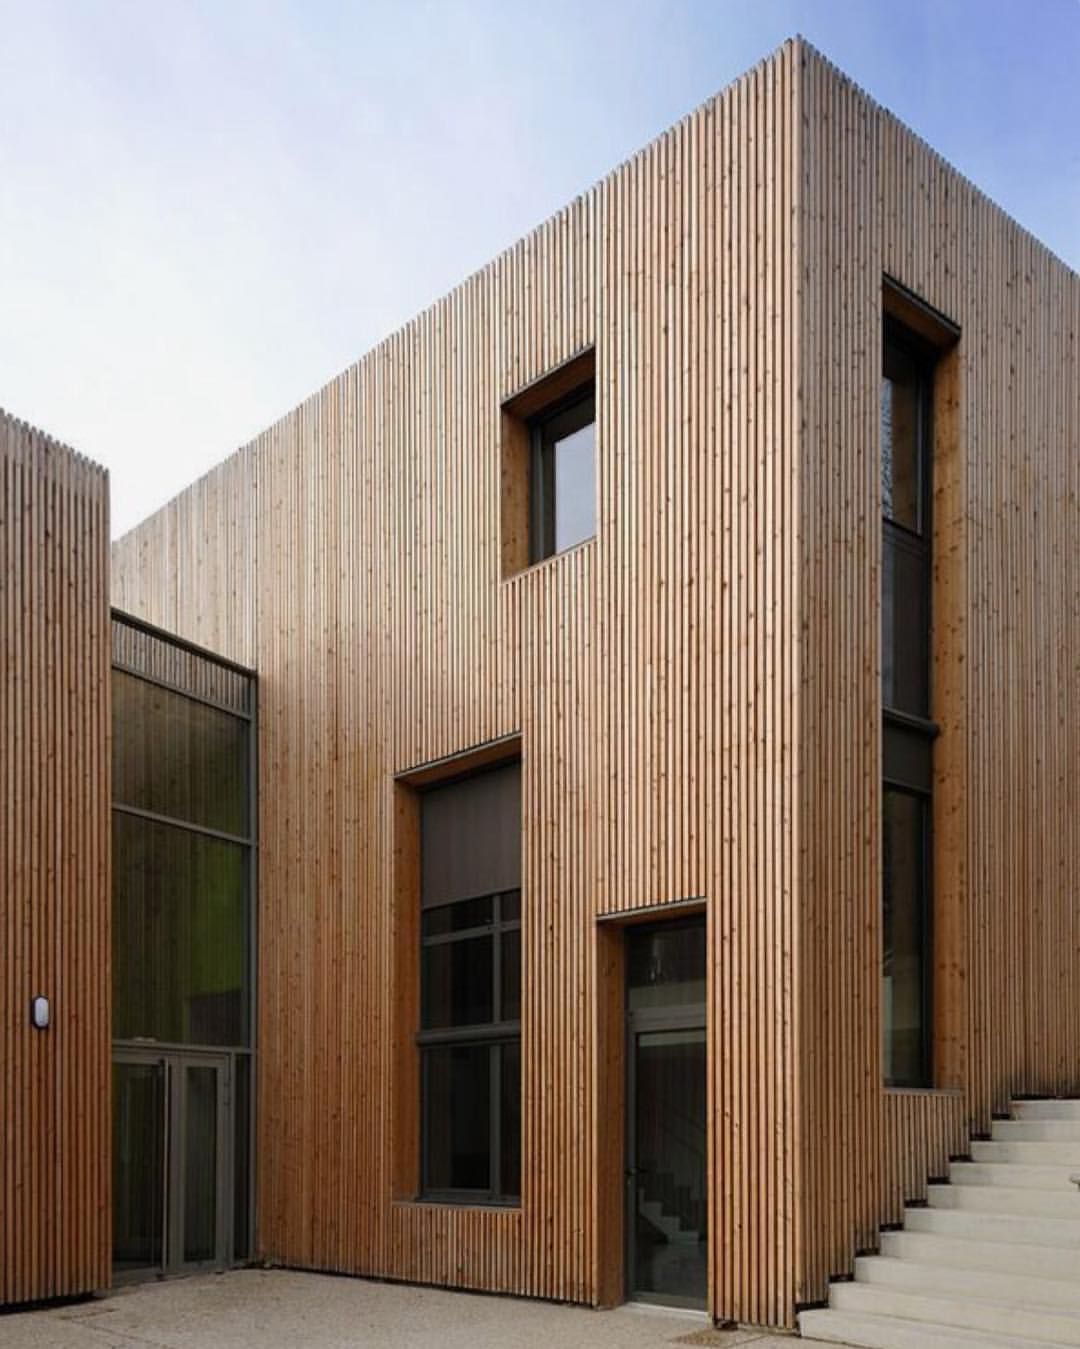 Timber cladding made exteriors